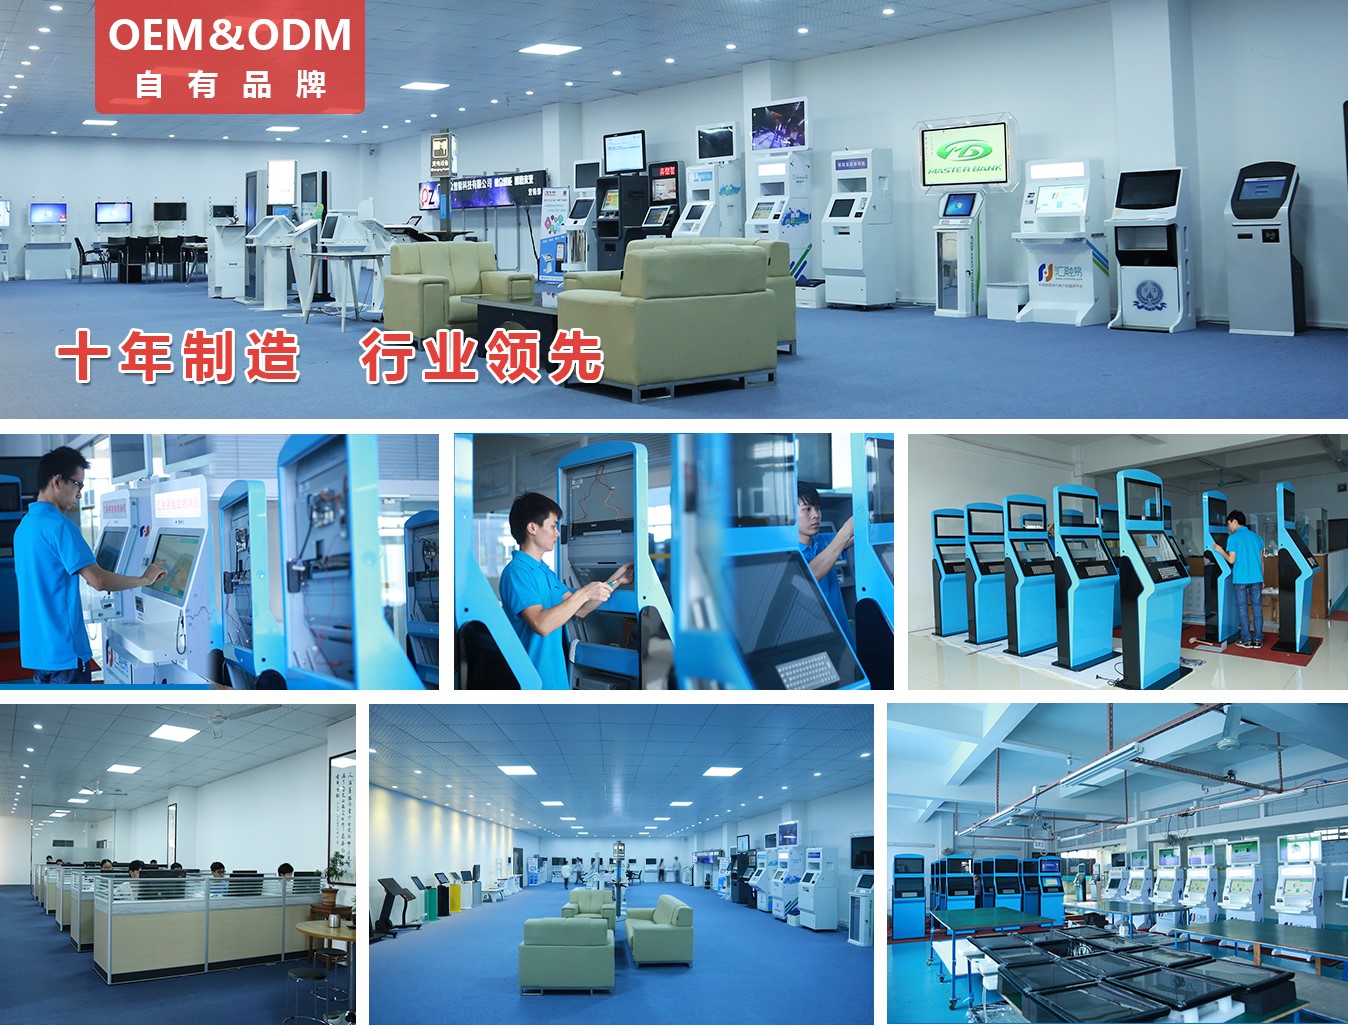 32寸壁挂式广告机PZ-32BE1--广州磐众智能科技有限公司